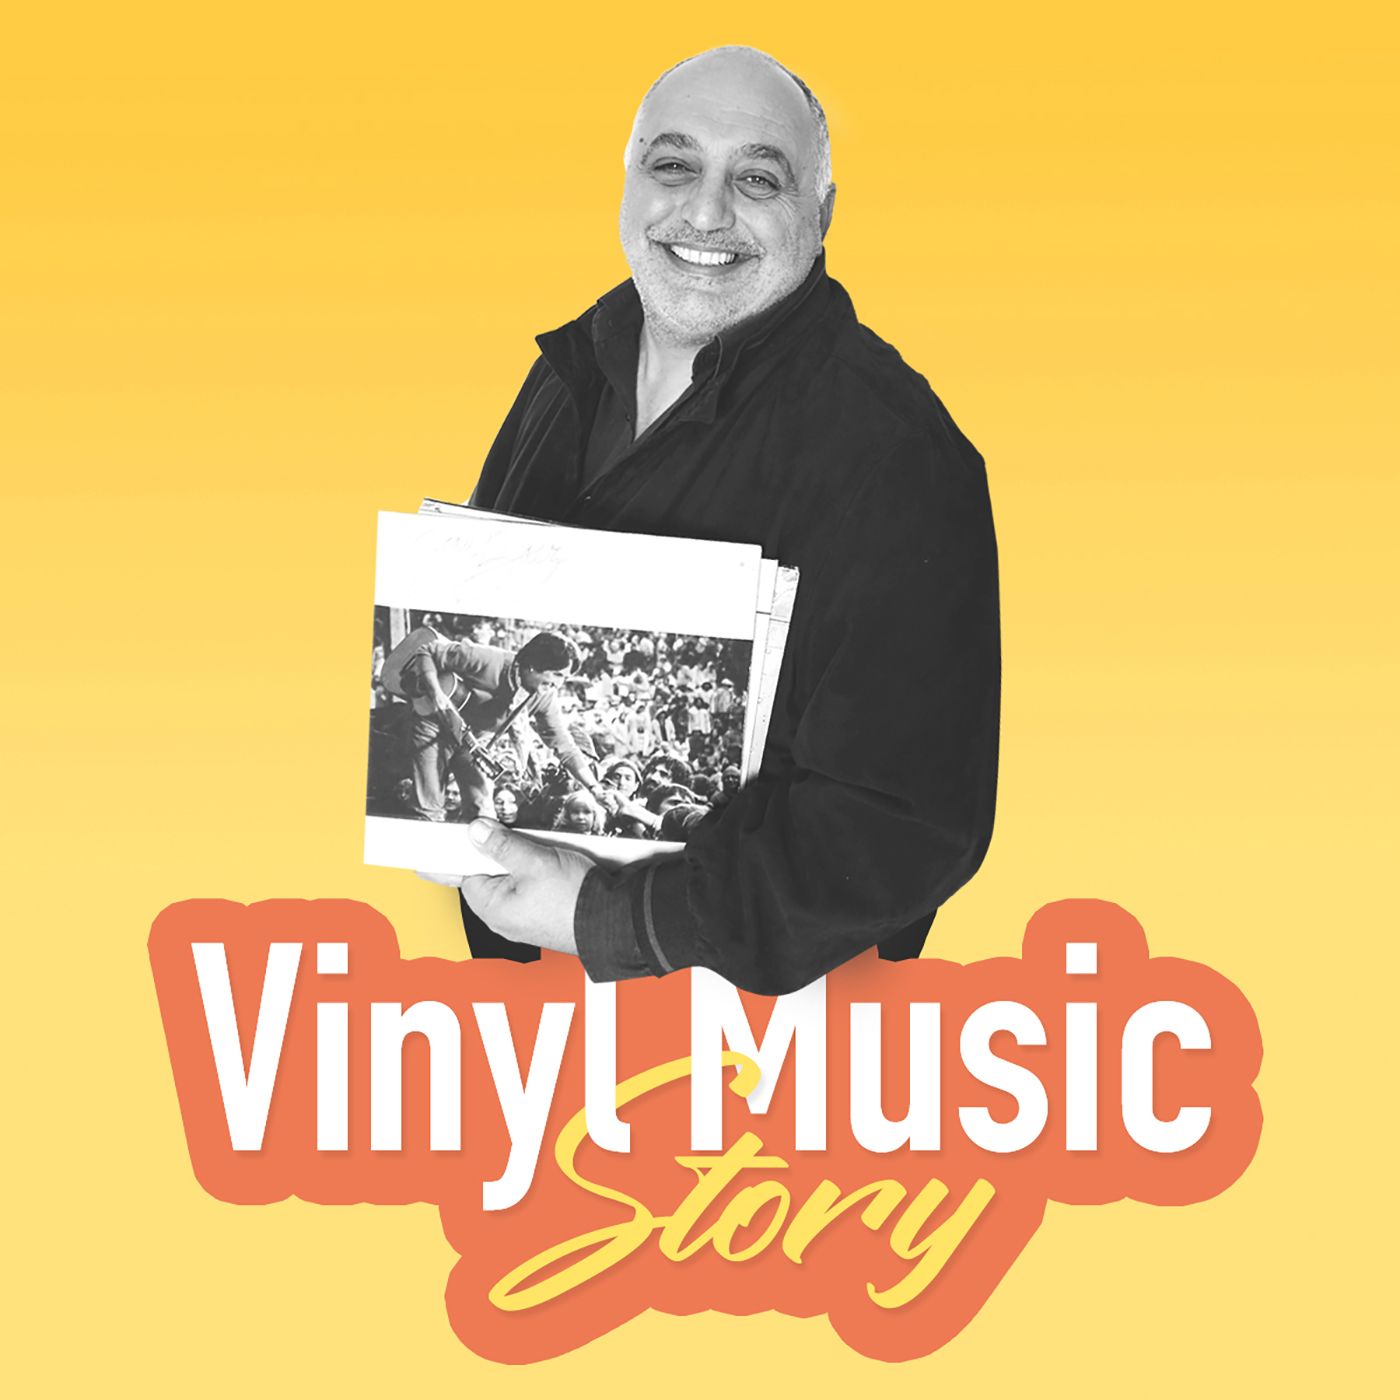 Vinyl Music Story